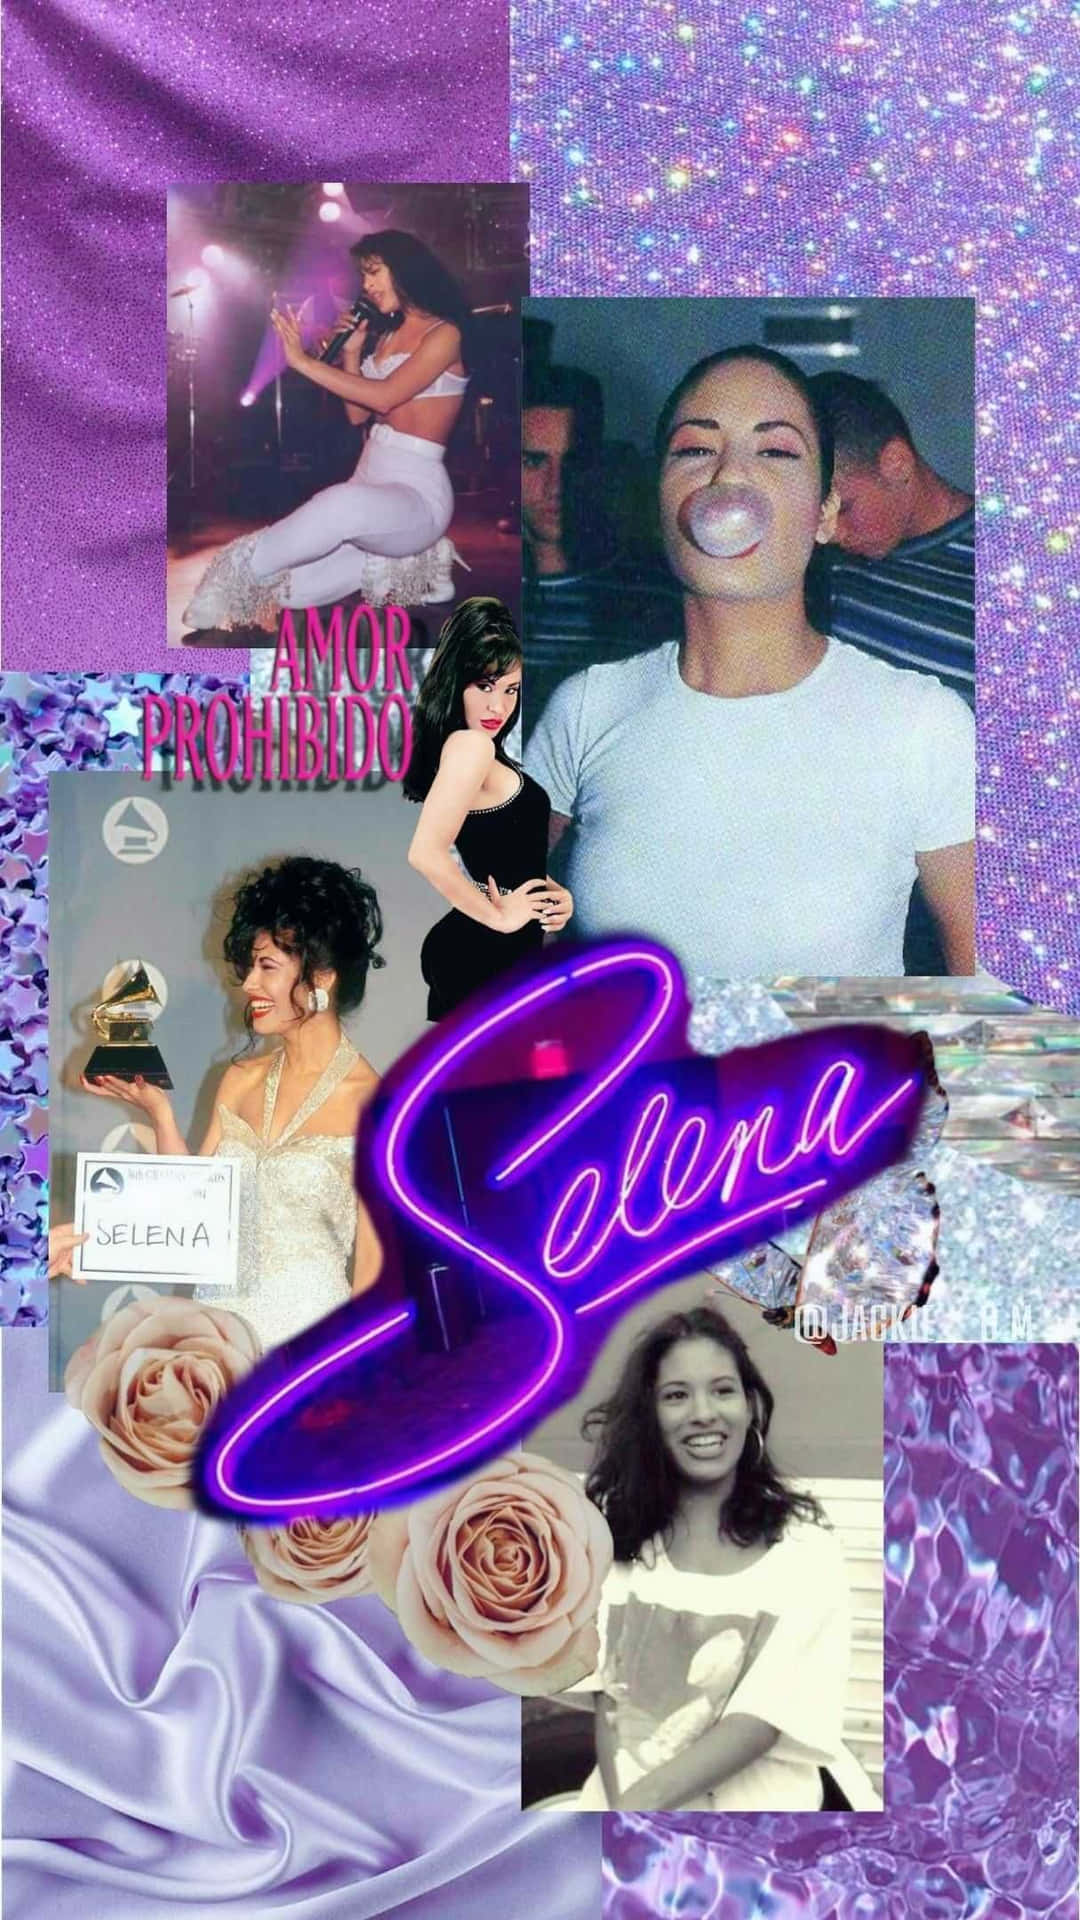 Zeigensie Ihre Liebe Zur Lateinamerikanischen Ikone Selena Quintanilla Mit Diesem Stilvollen Iphone Wallpaper